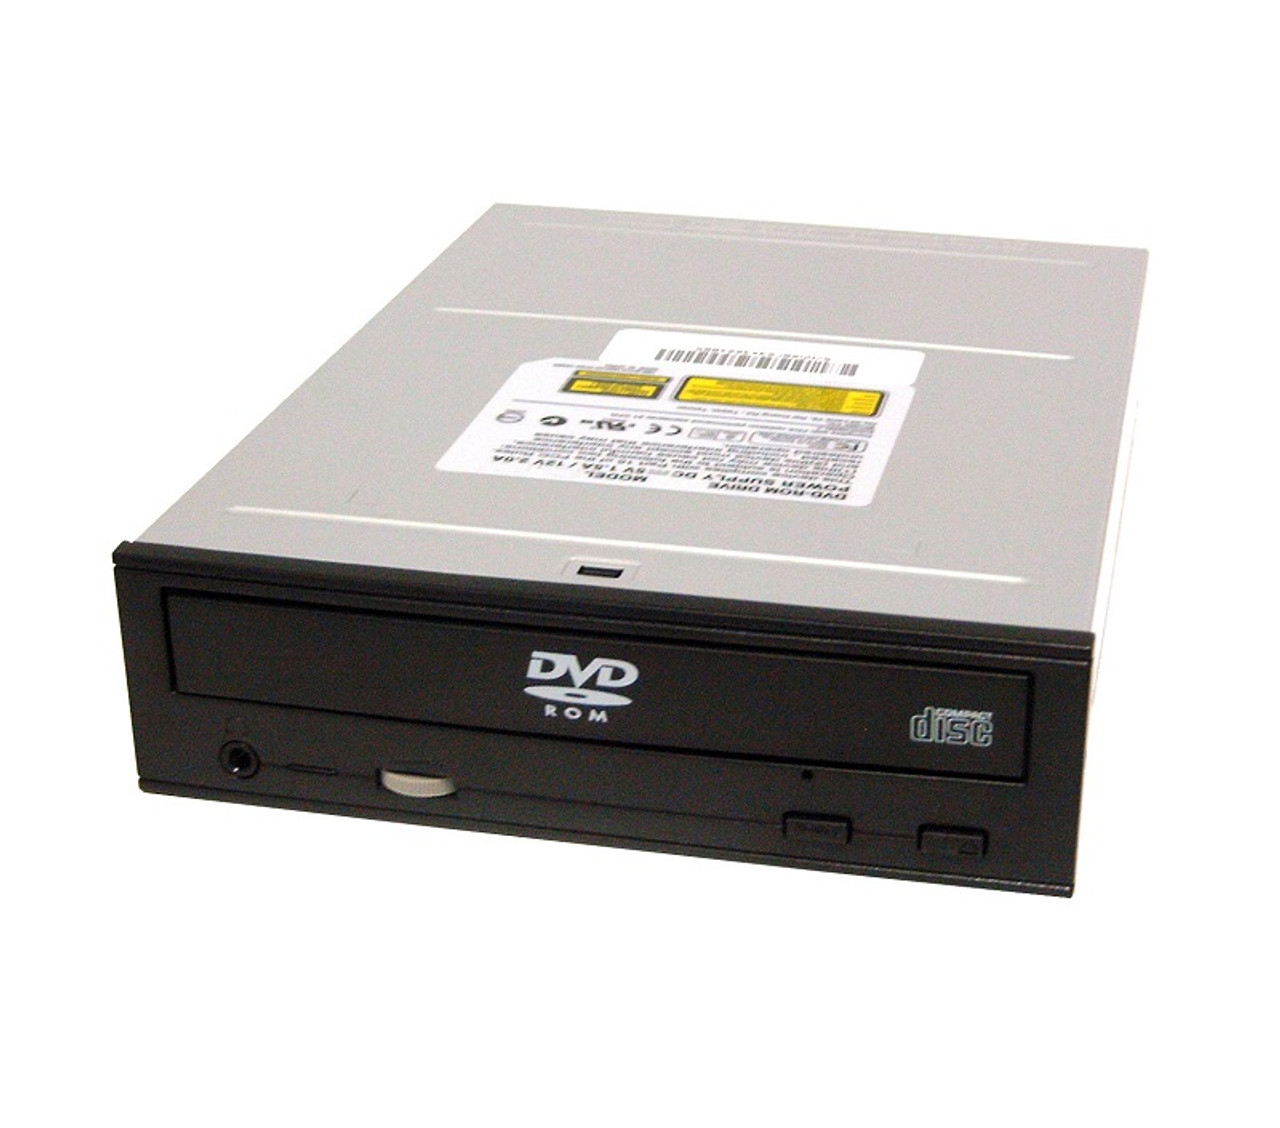 W520P - Dell DVD-ROM Drive Latitude E4300 E4310